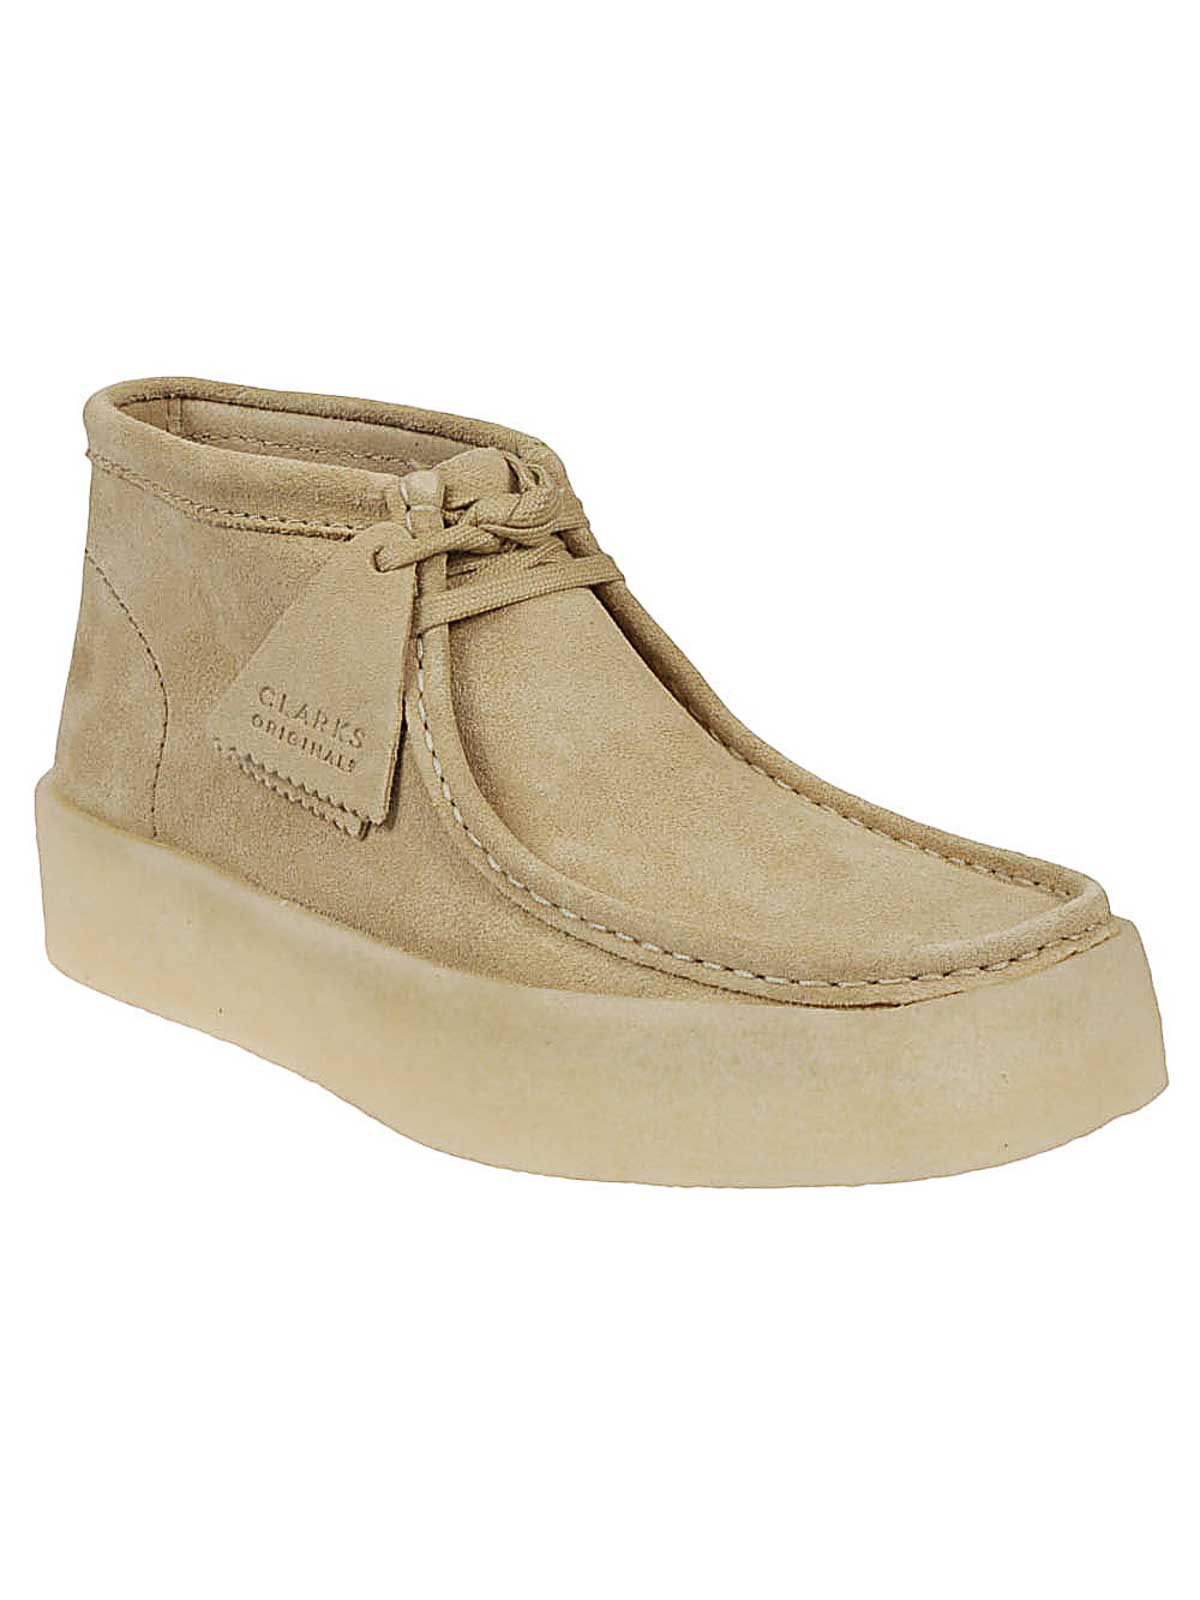 Shop Clarks Zapatos Clásicos - Marrón In Brown